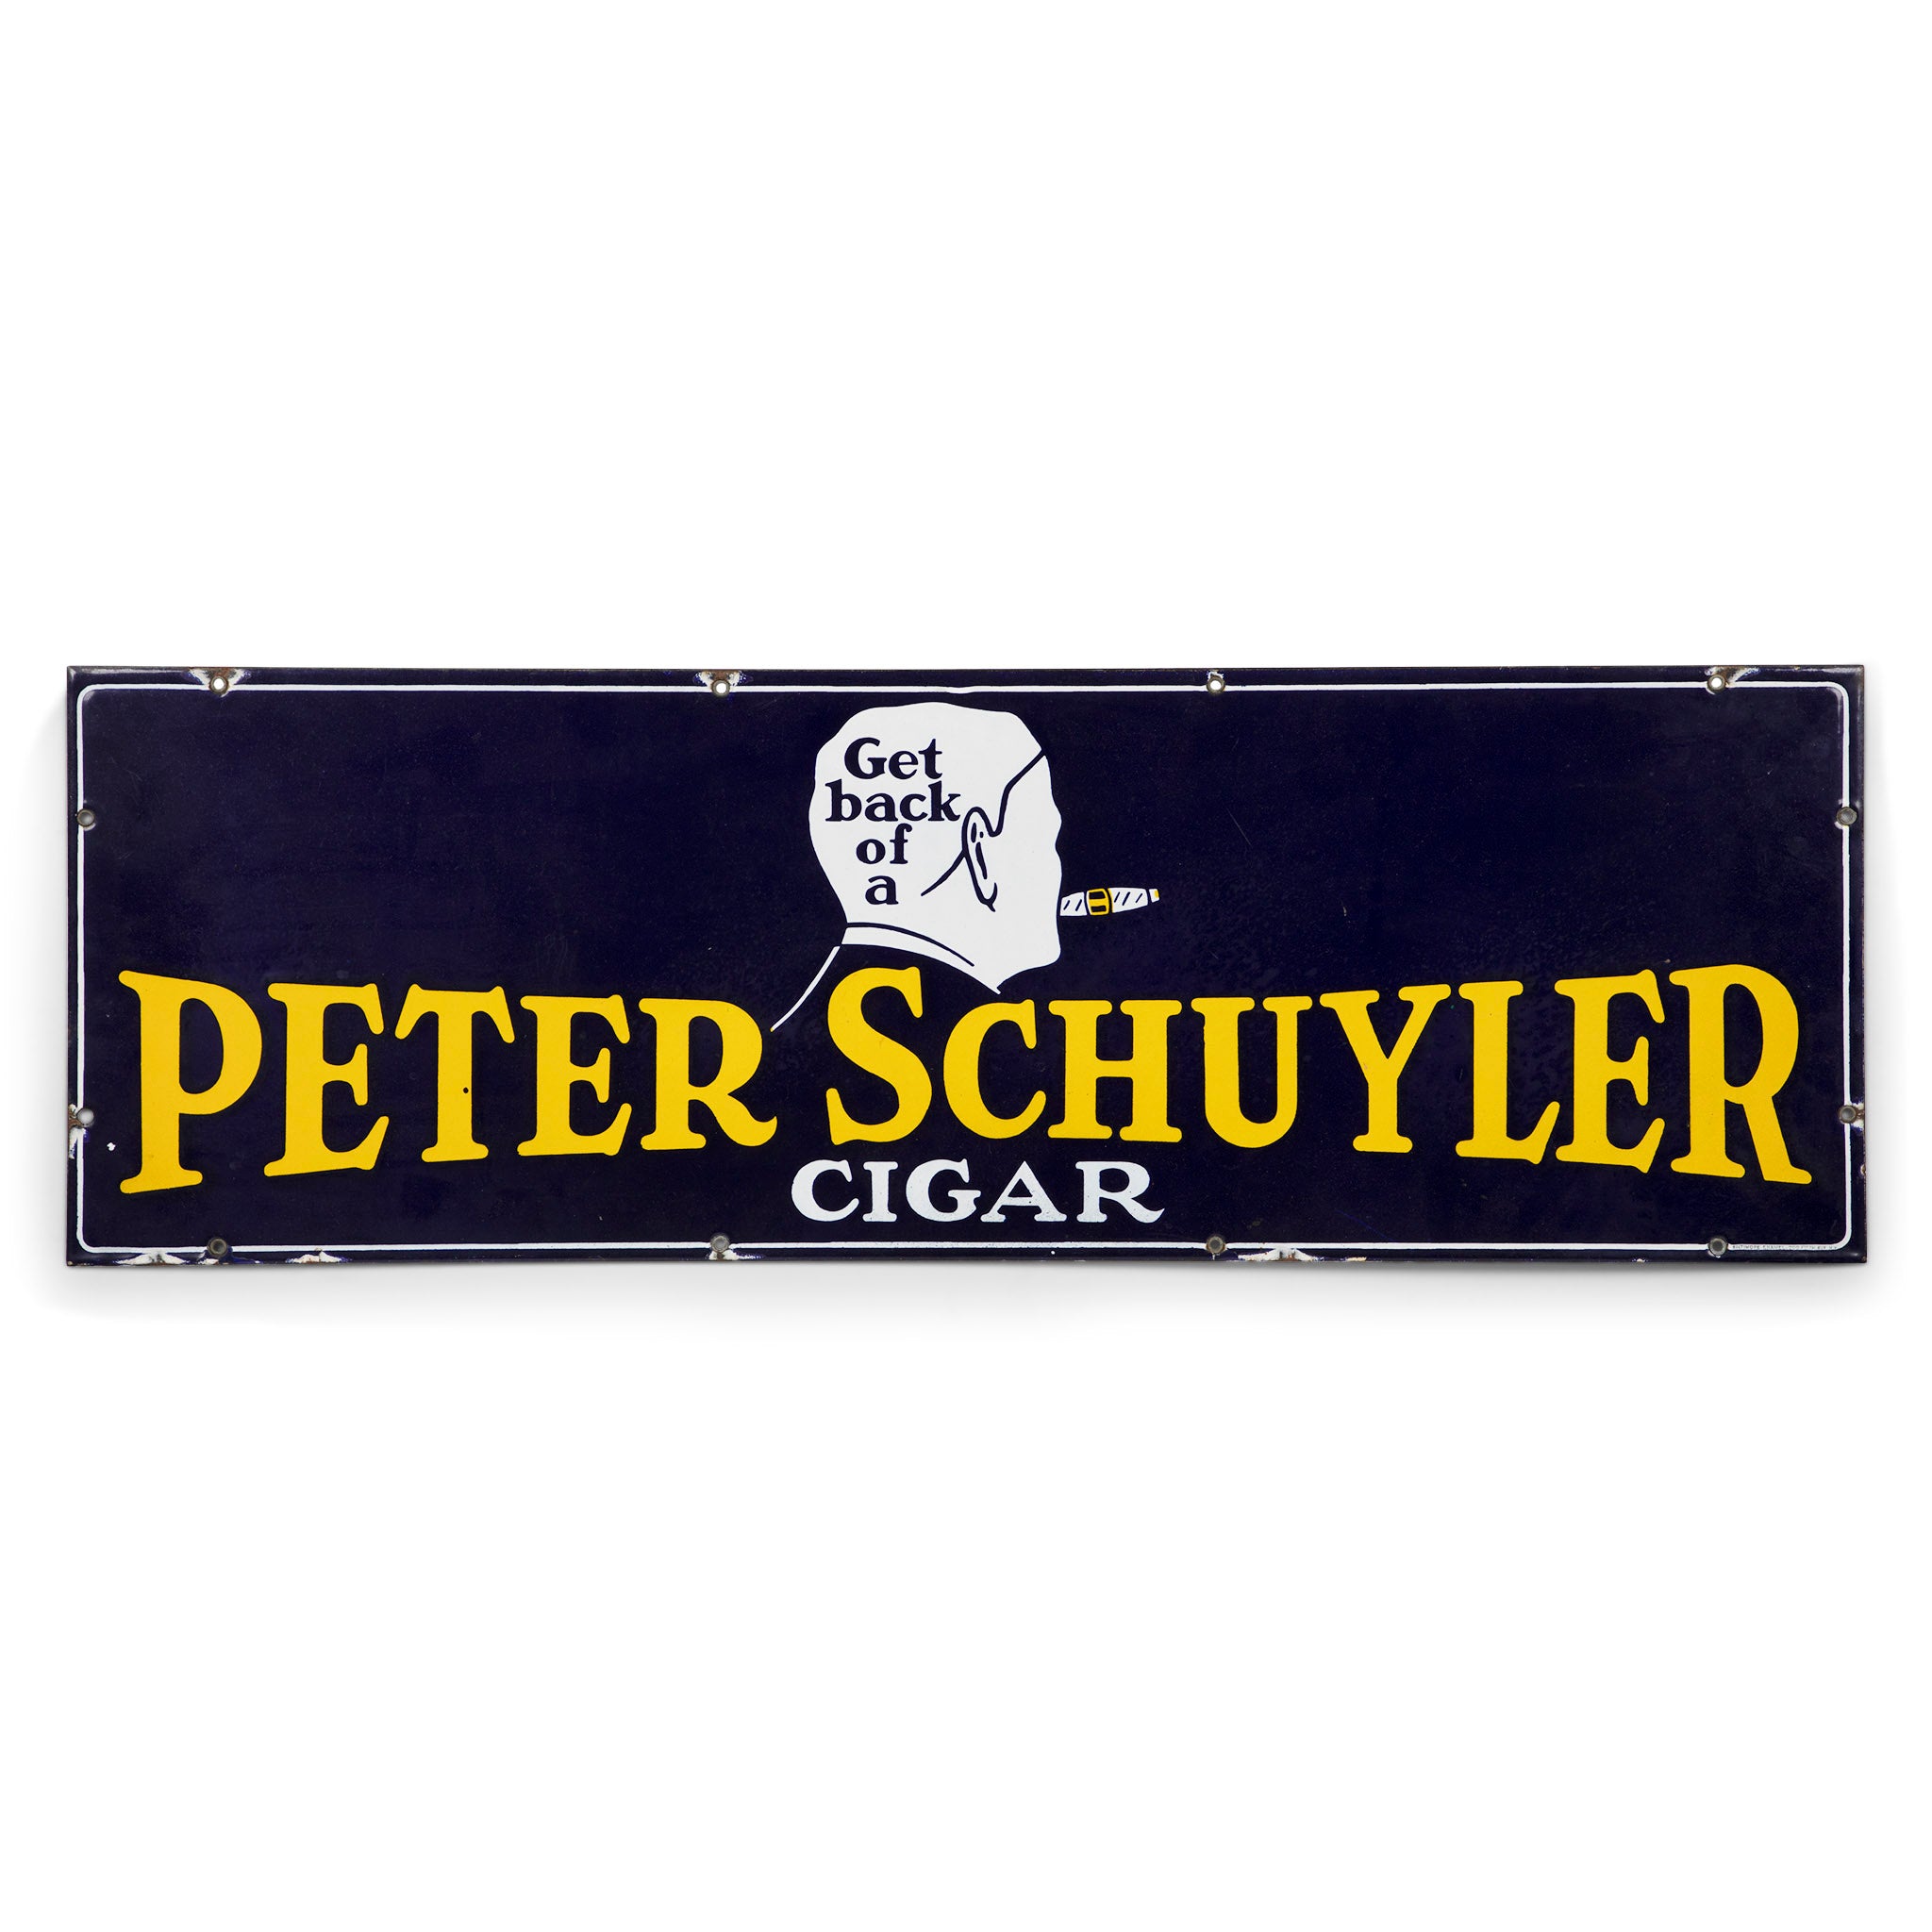 Peter Schuyler Cigars Porcelain Sign